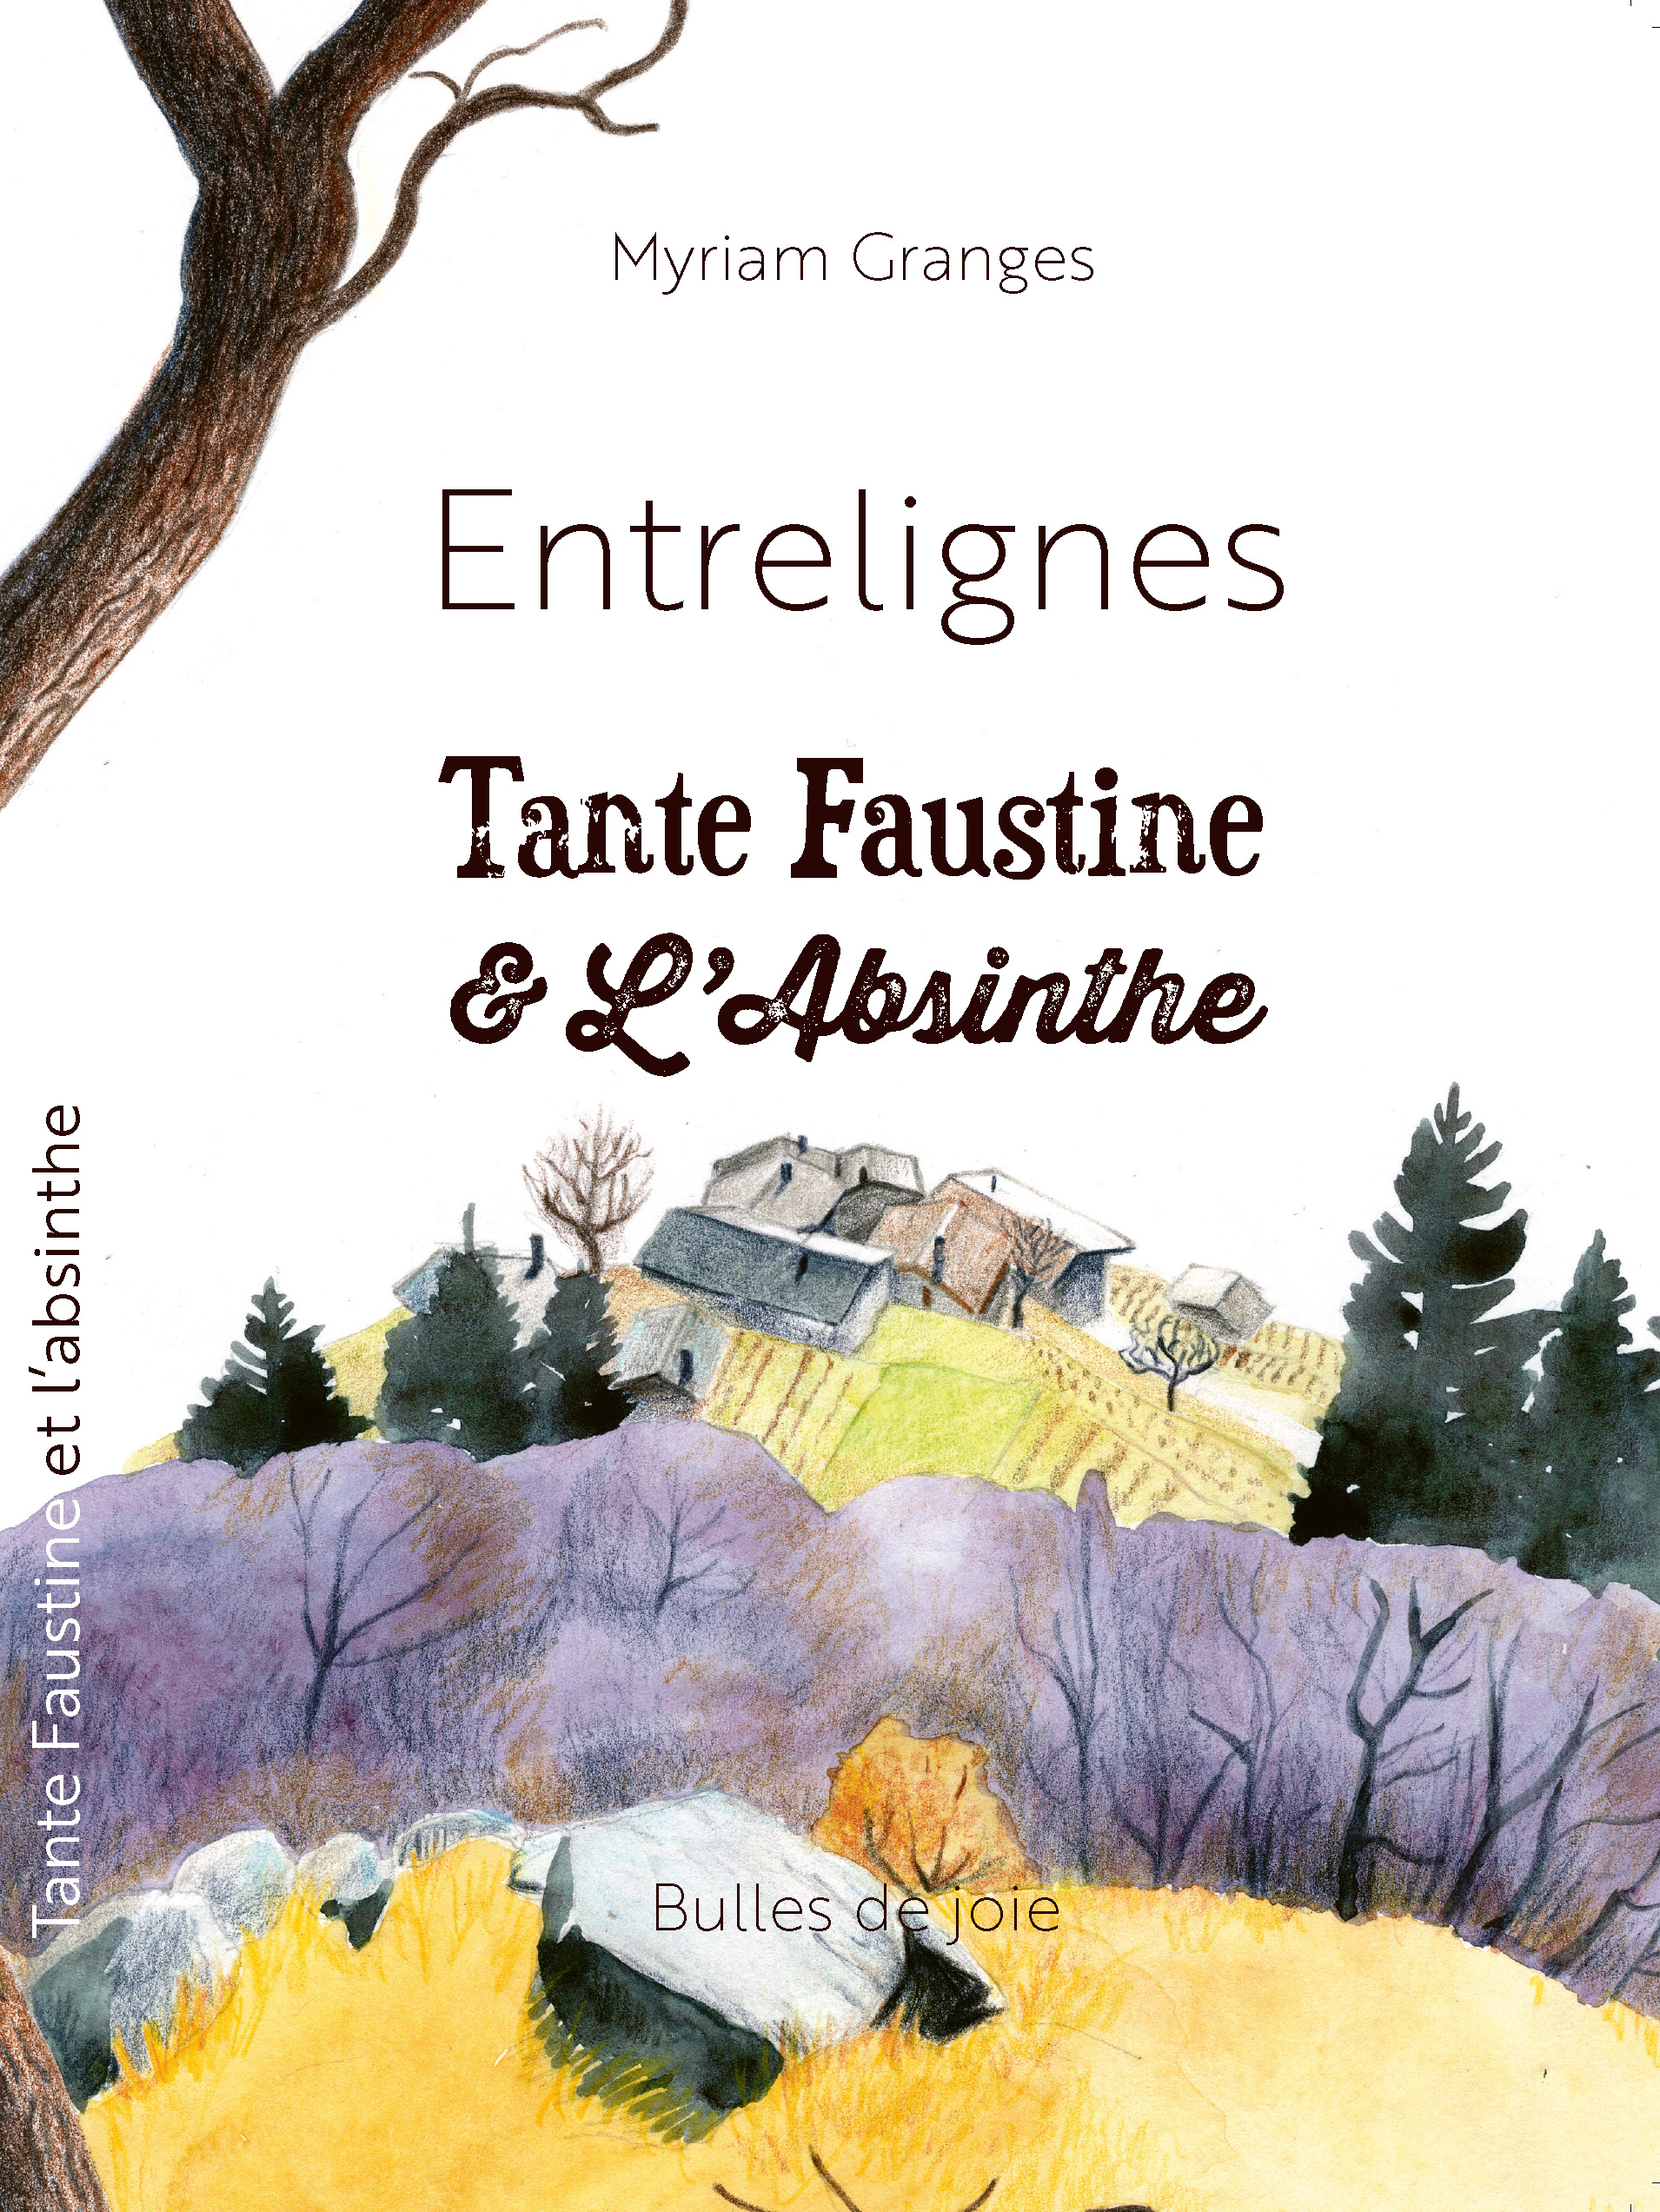 Entrelignes, Tante Faustine & L'Absinthe, de Myriam Granges